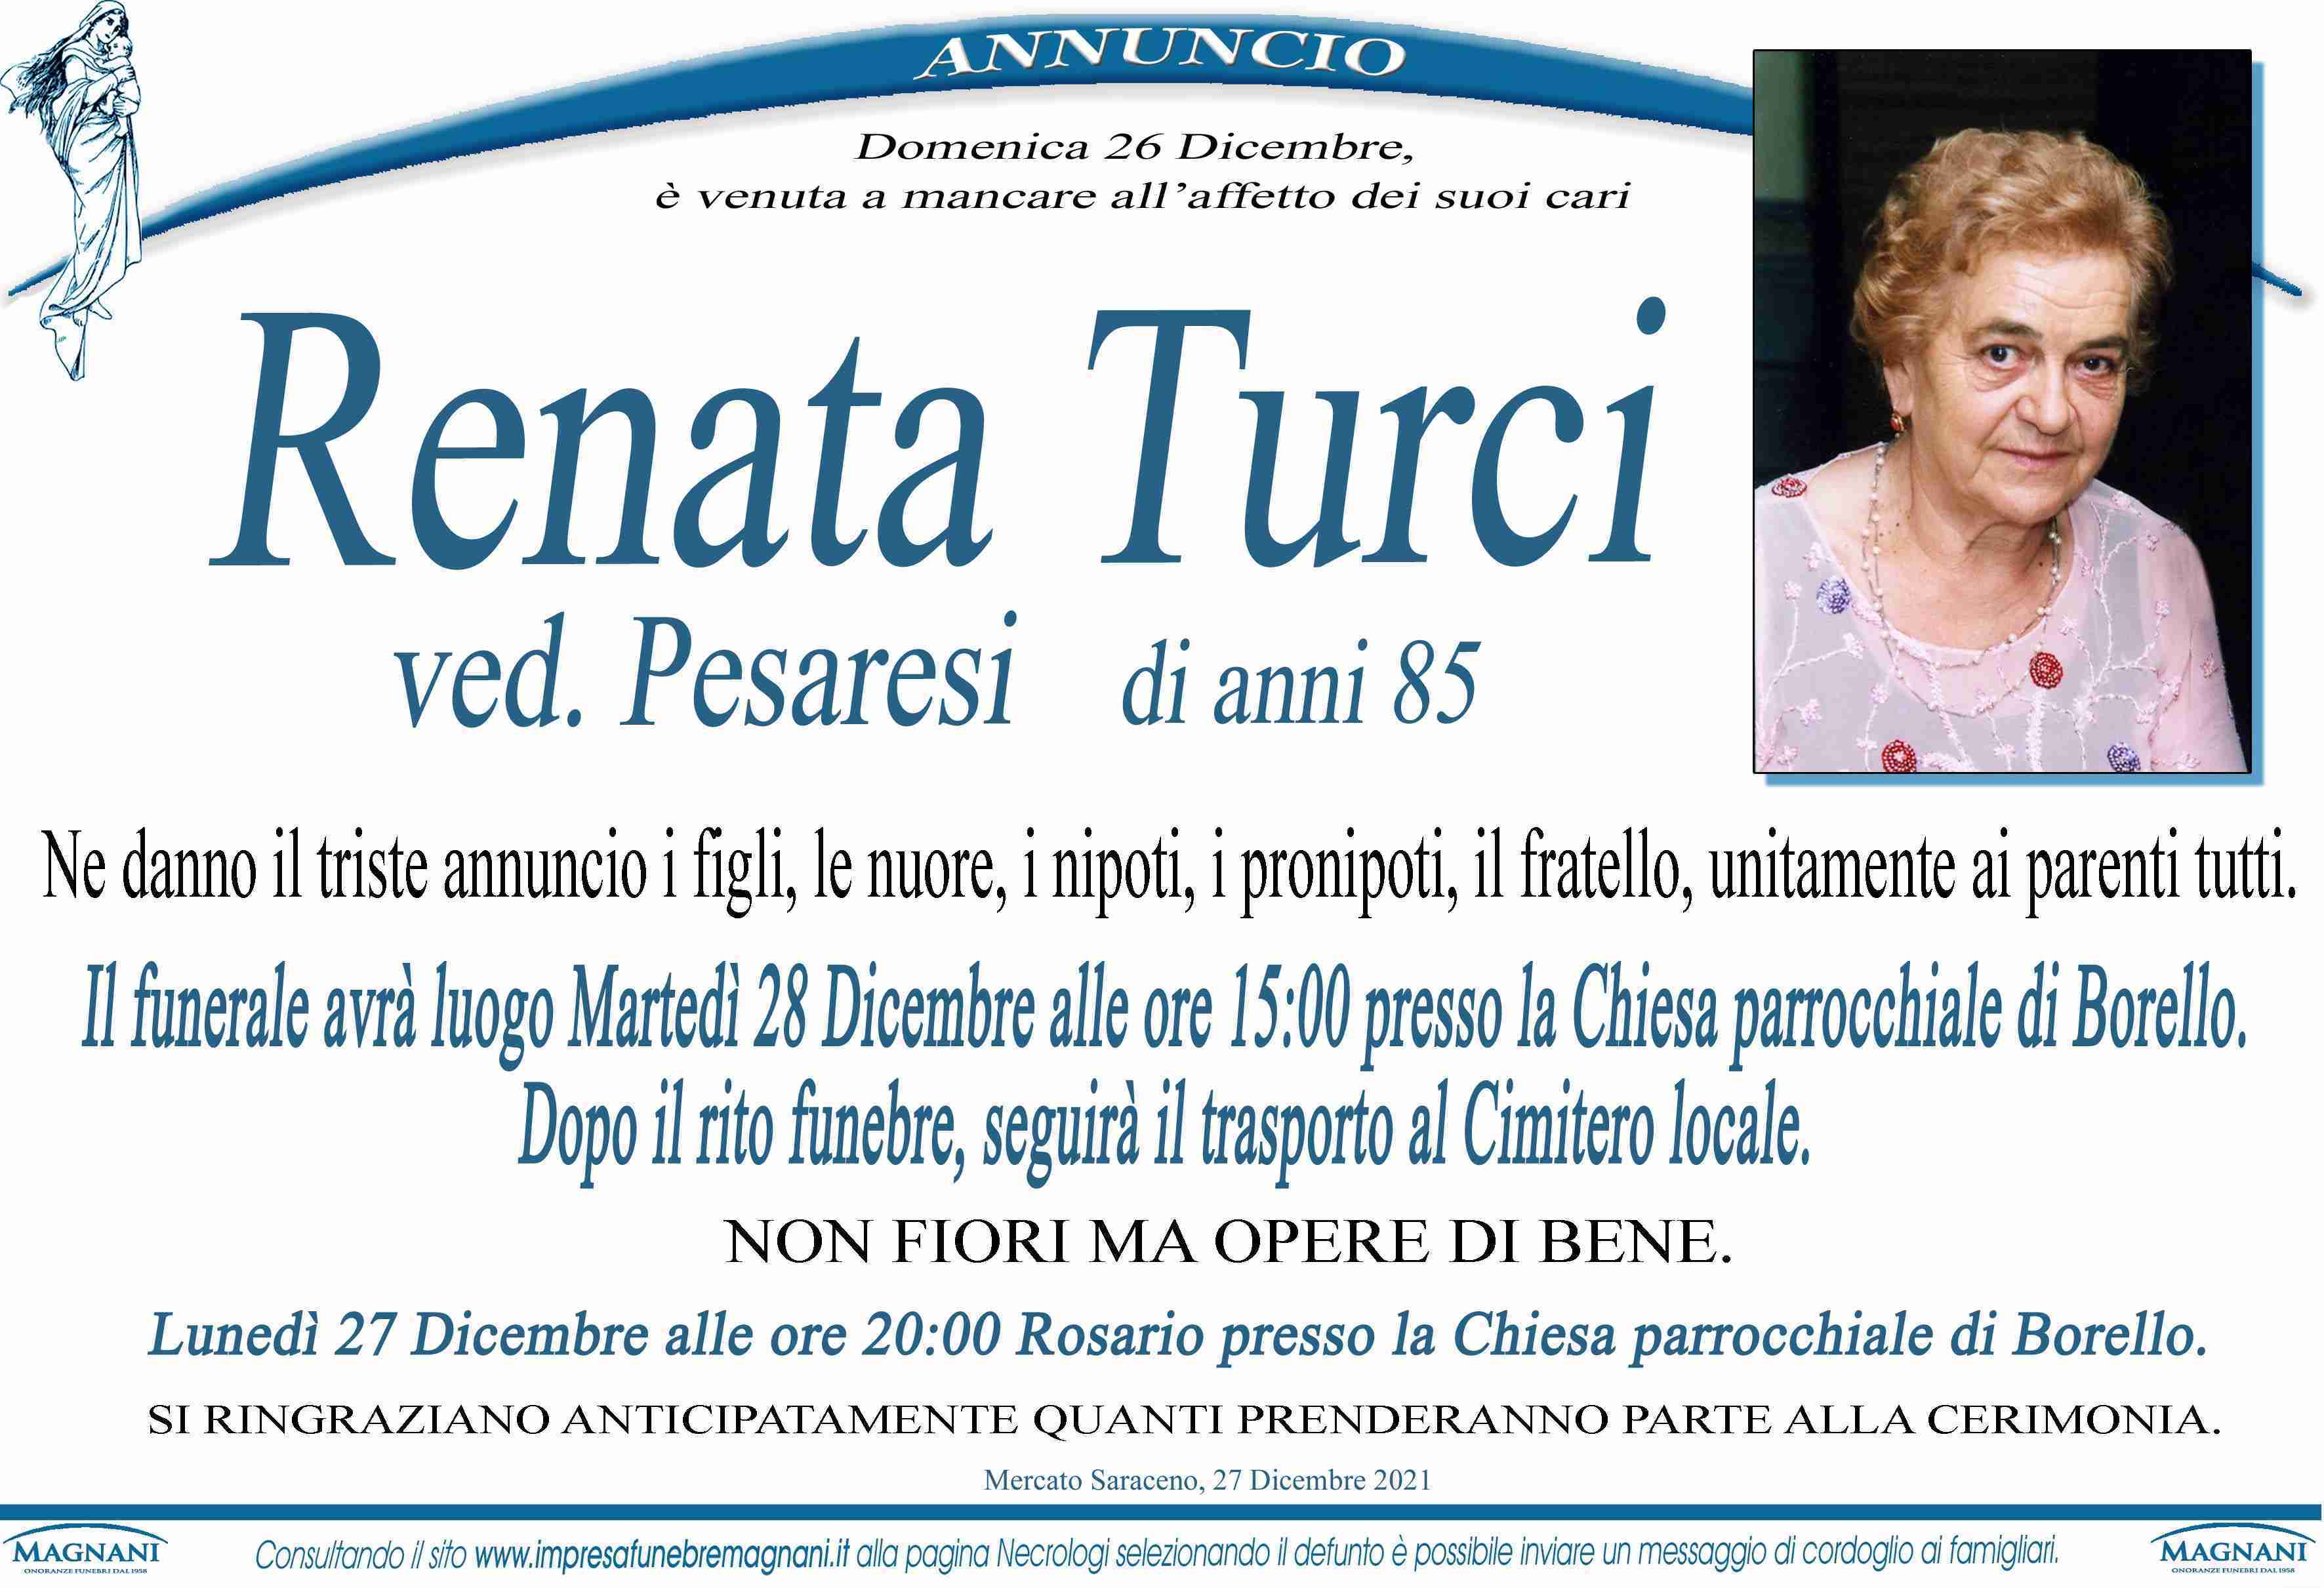 Renata Turci